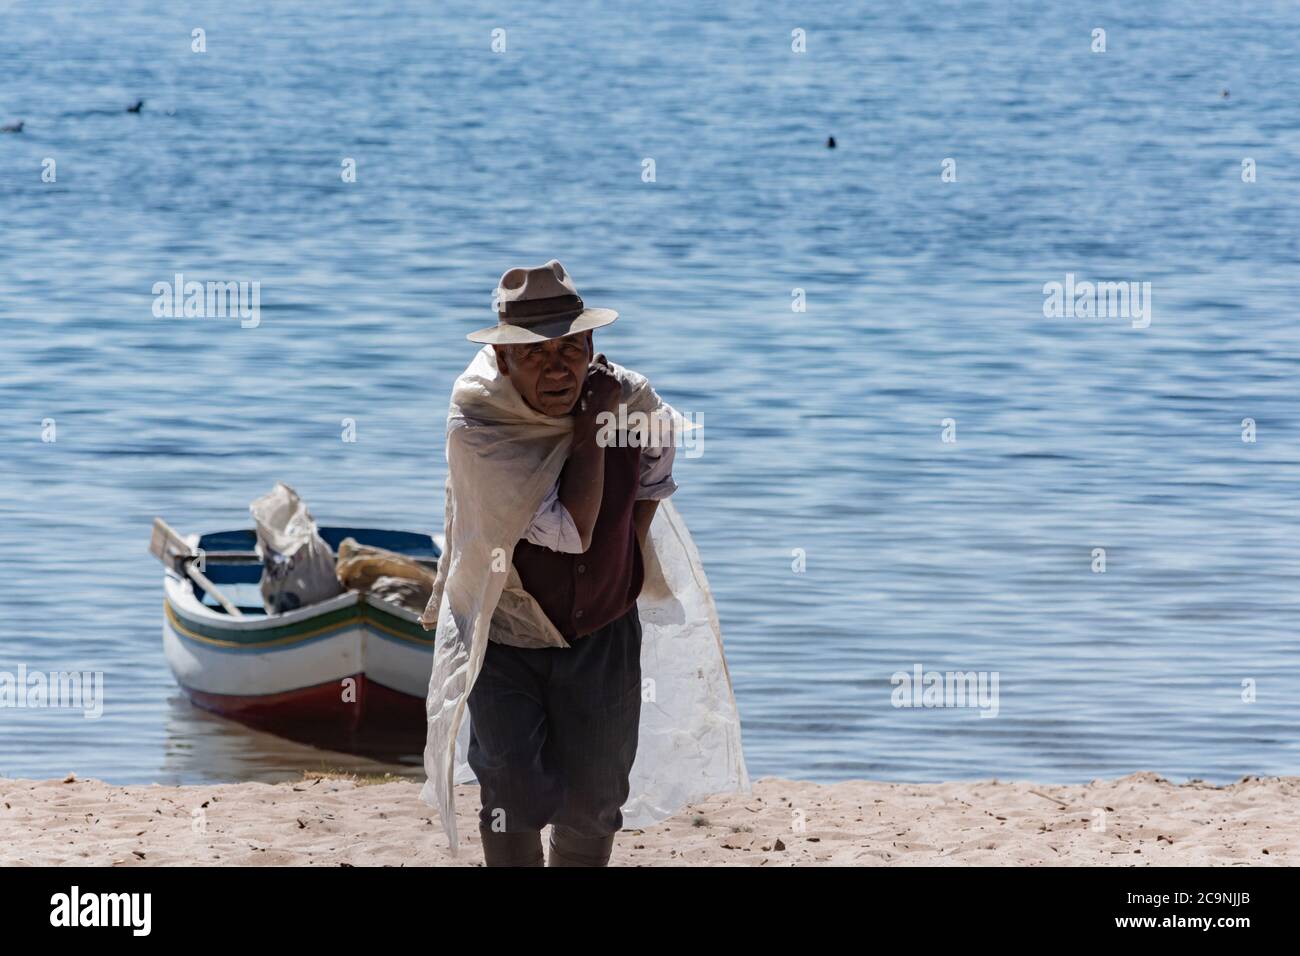 ISLA DEL Sol, BOLIVIA - 26 LUGLIO 2016: Un uomo boliviano anziano non identificato trasporta un sacchetto di cemento nel lato nord dell'Isla del Sol, Bolivia Foto Stock